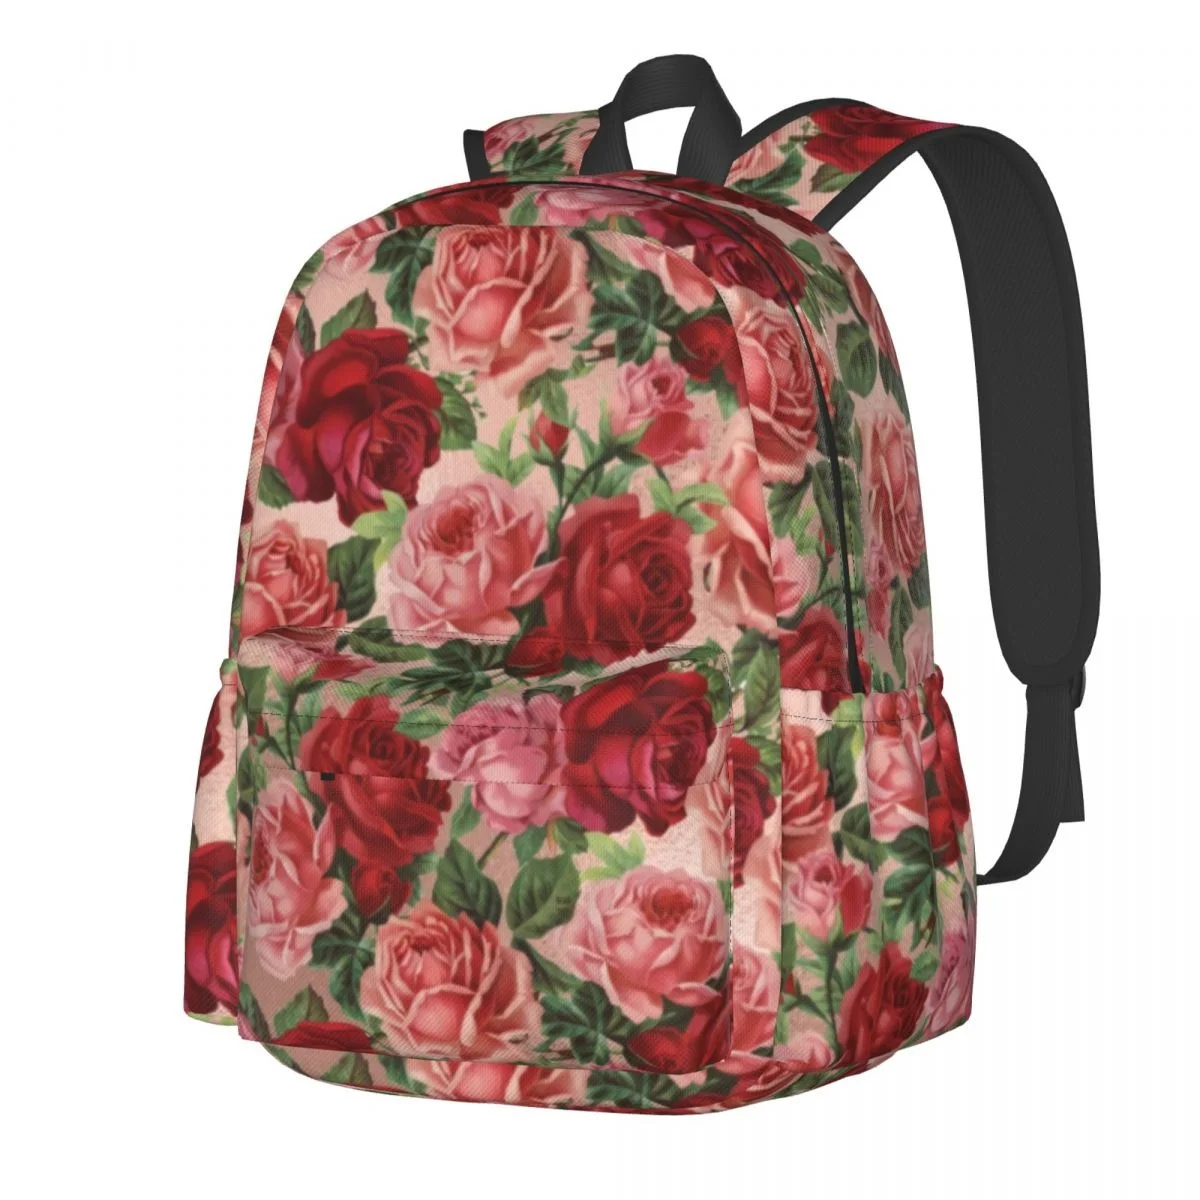 

Винтажный рюкзак с цветочным принтом, женские элегантные большие рюкзаки с красными розами, школьные рюкзаки из полиэстера, спортивные высококачественные рюкзаки